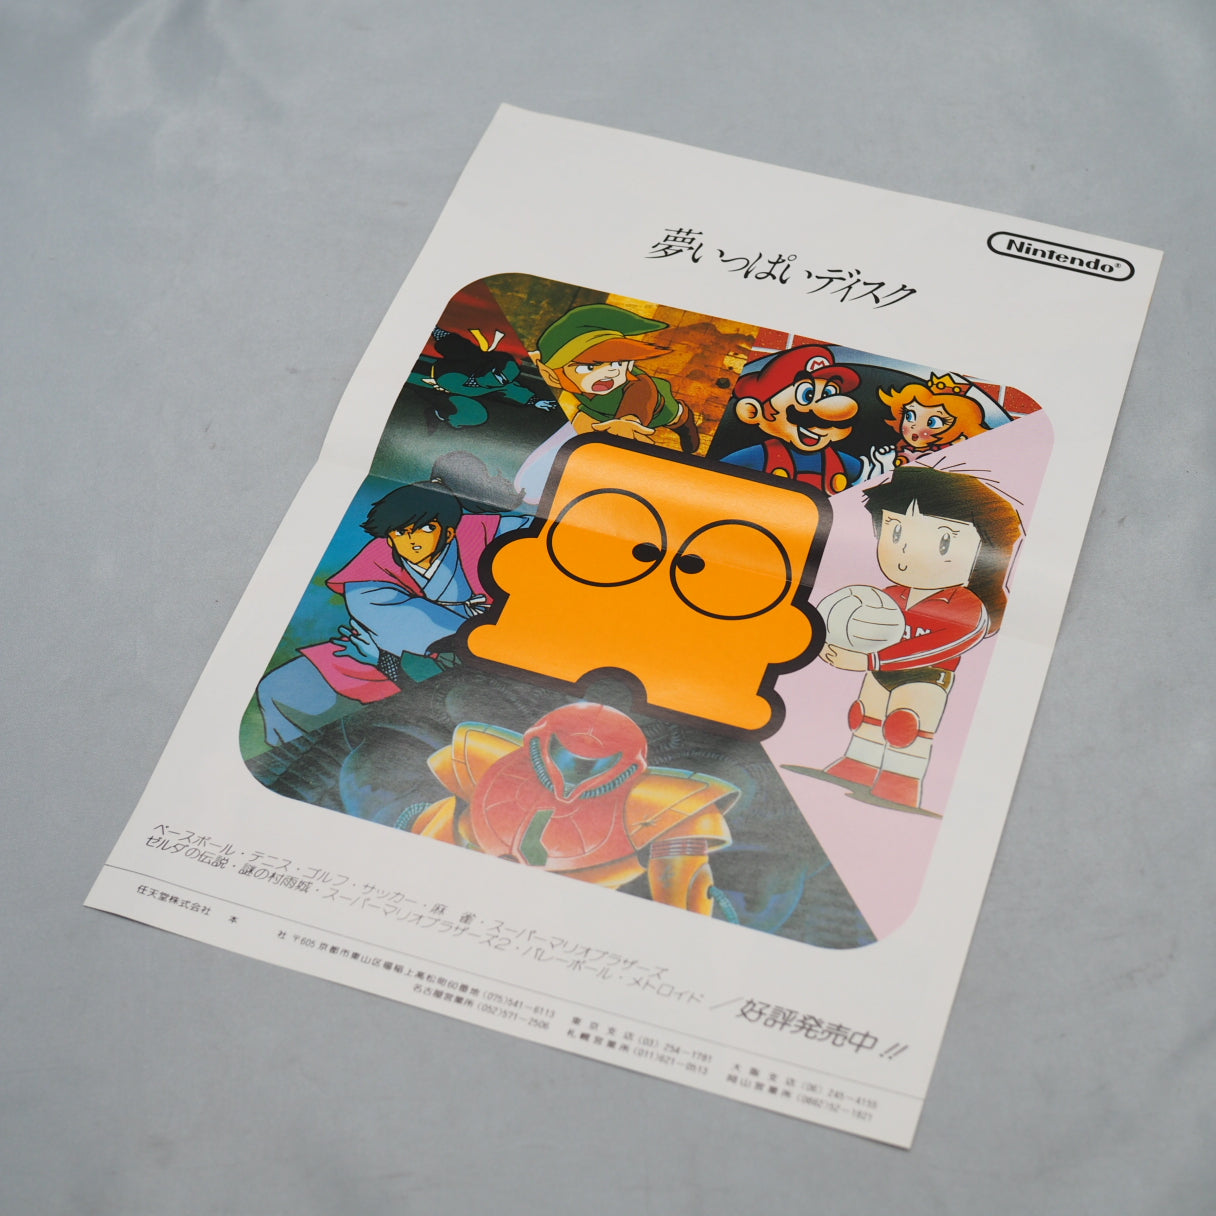 Pro wrestling Nintendo Famicom disk Catalog Flyer Leaflet Paper Poster